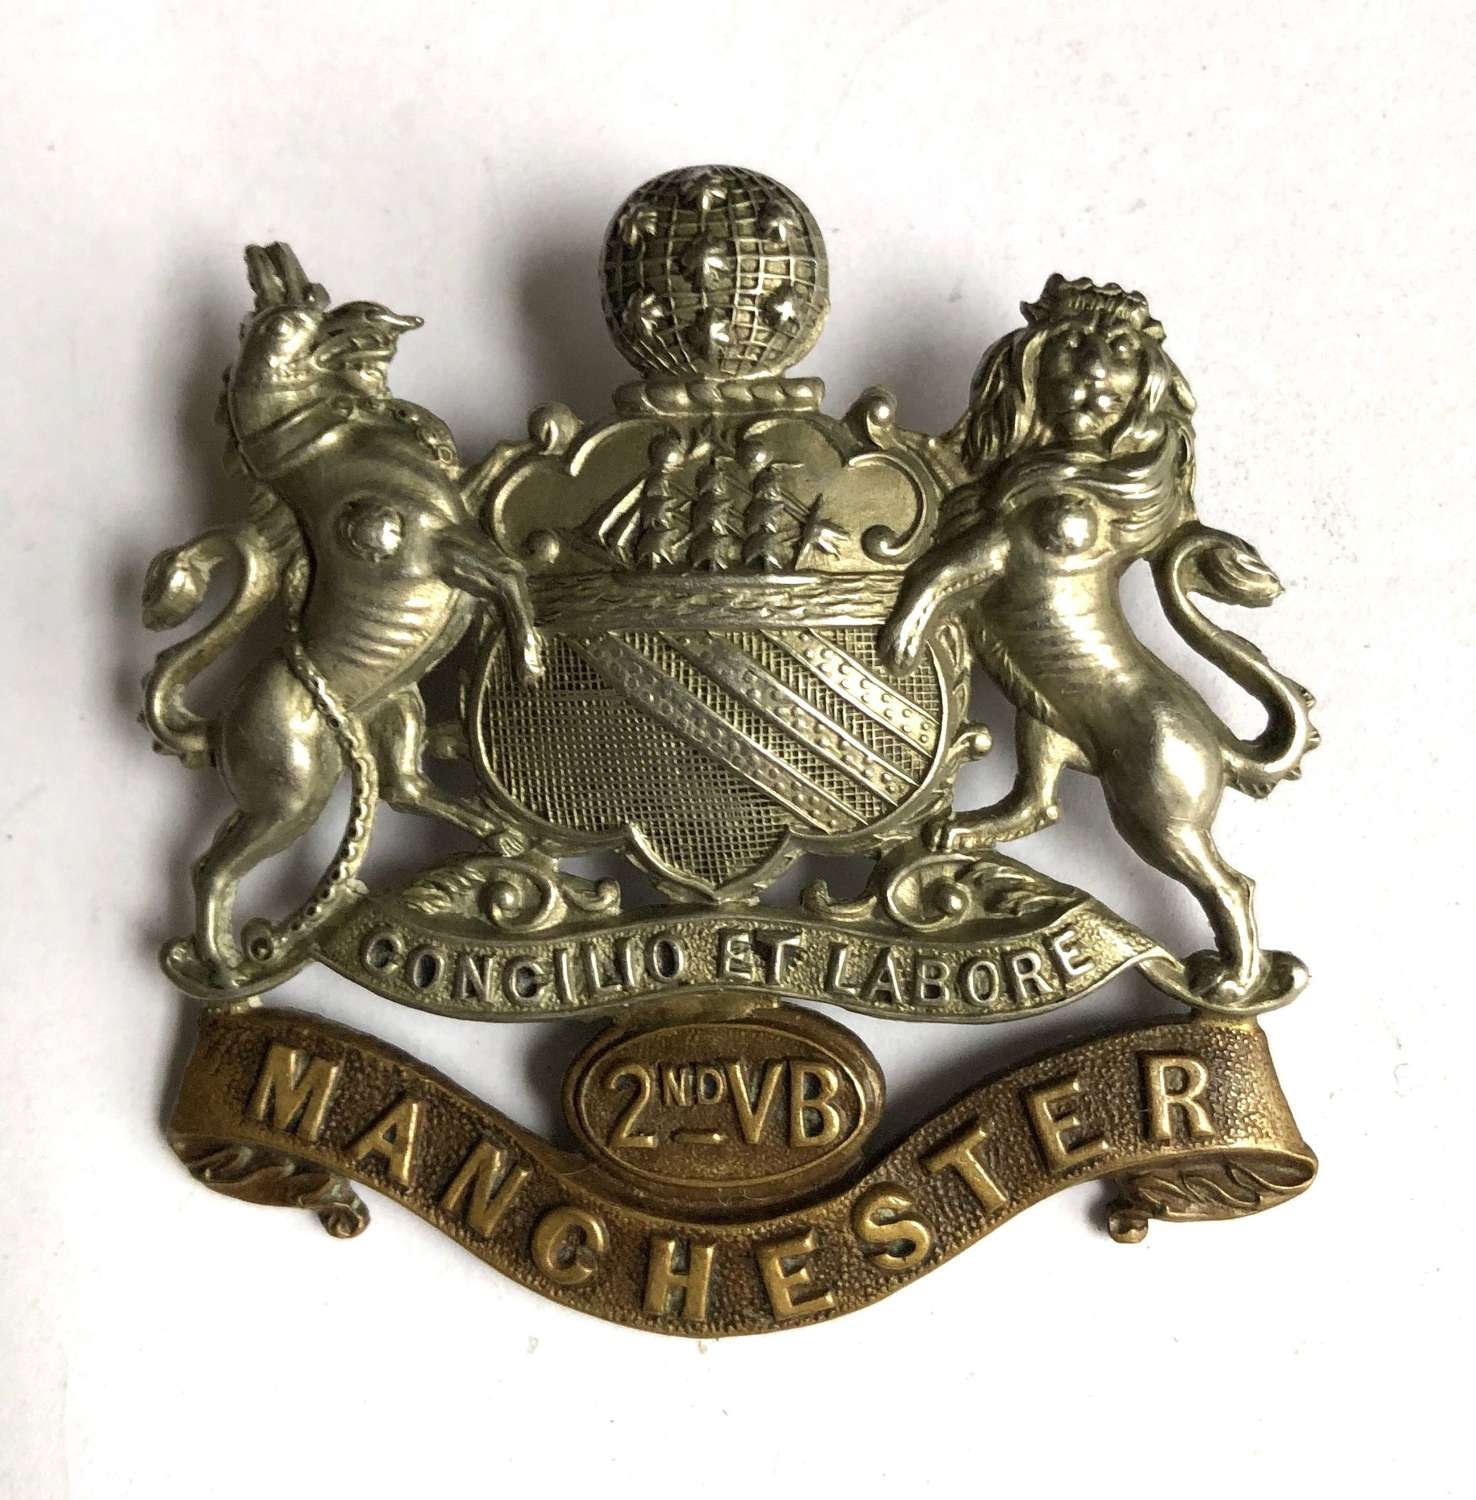 2nd VB Manchester Regiment cap badge circa 1896-1908